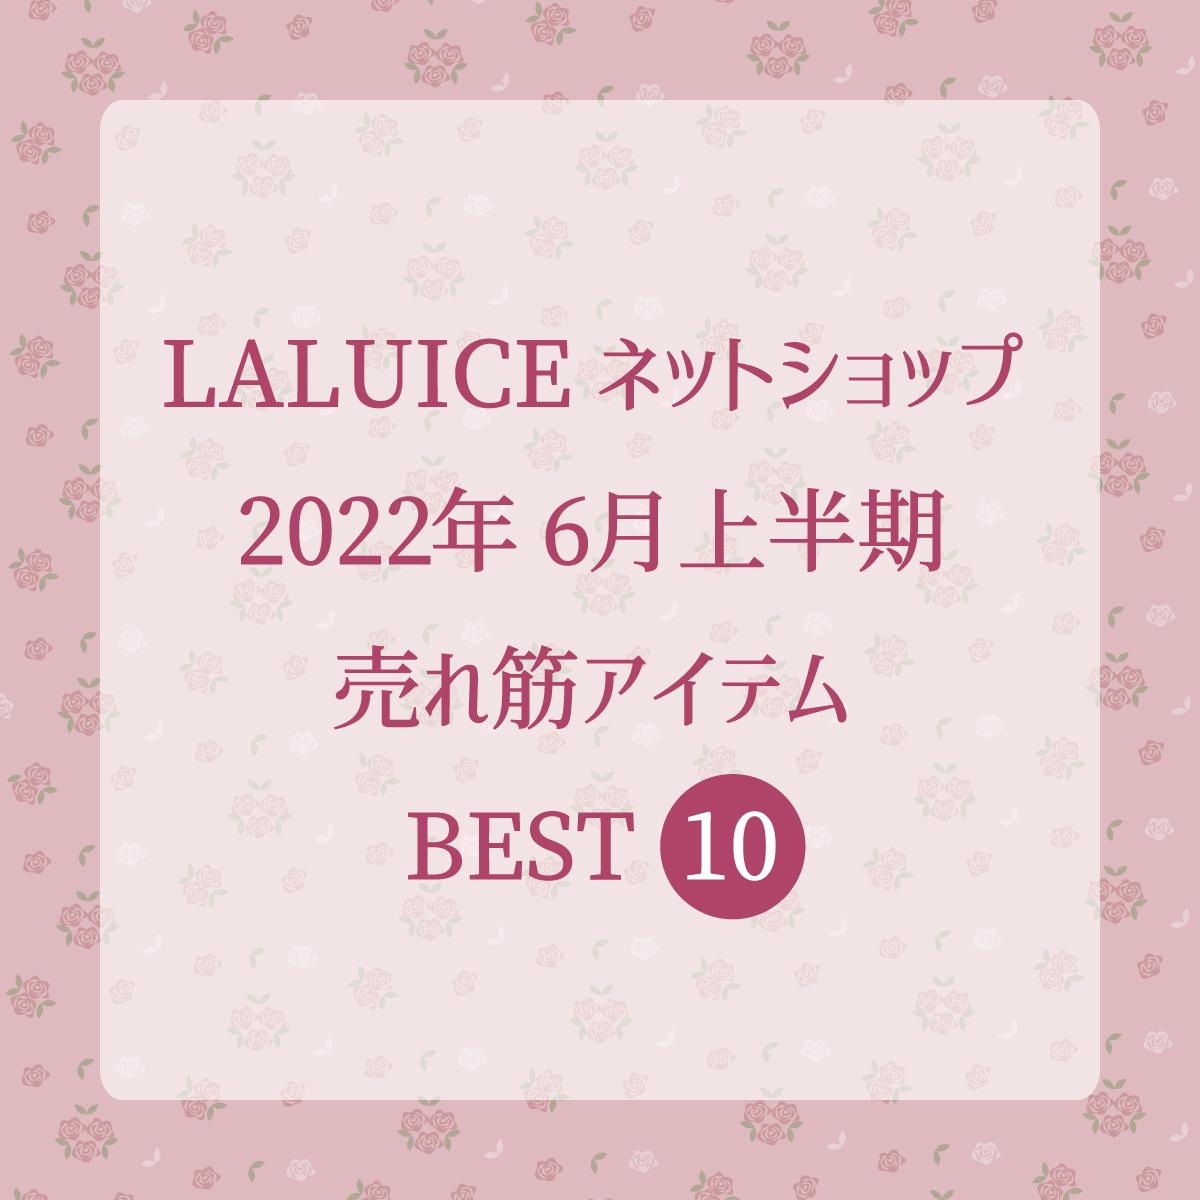 2022年6月上半期(6/1～6/15) LALUICEネットショップ売れ筋アイテム BEST10